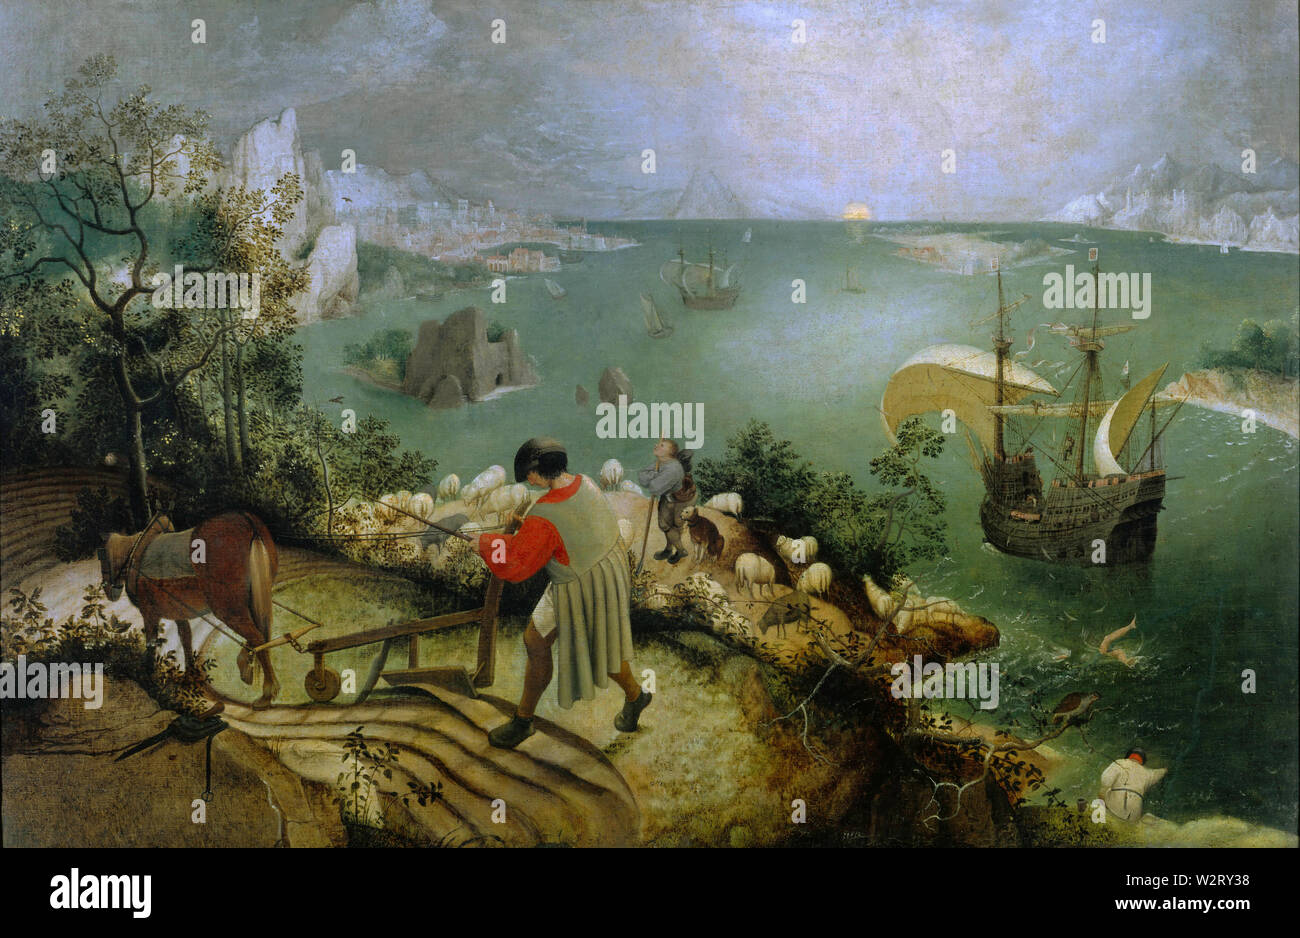 Landschaft mit dem Sturz des Ikarus (Landschaft mit Sturz des Ikarus) (1558) Pieter Bruegel (Brueghel) der Ältere (I) - hohe Qualität und Auflösung Stockfoto